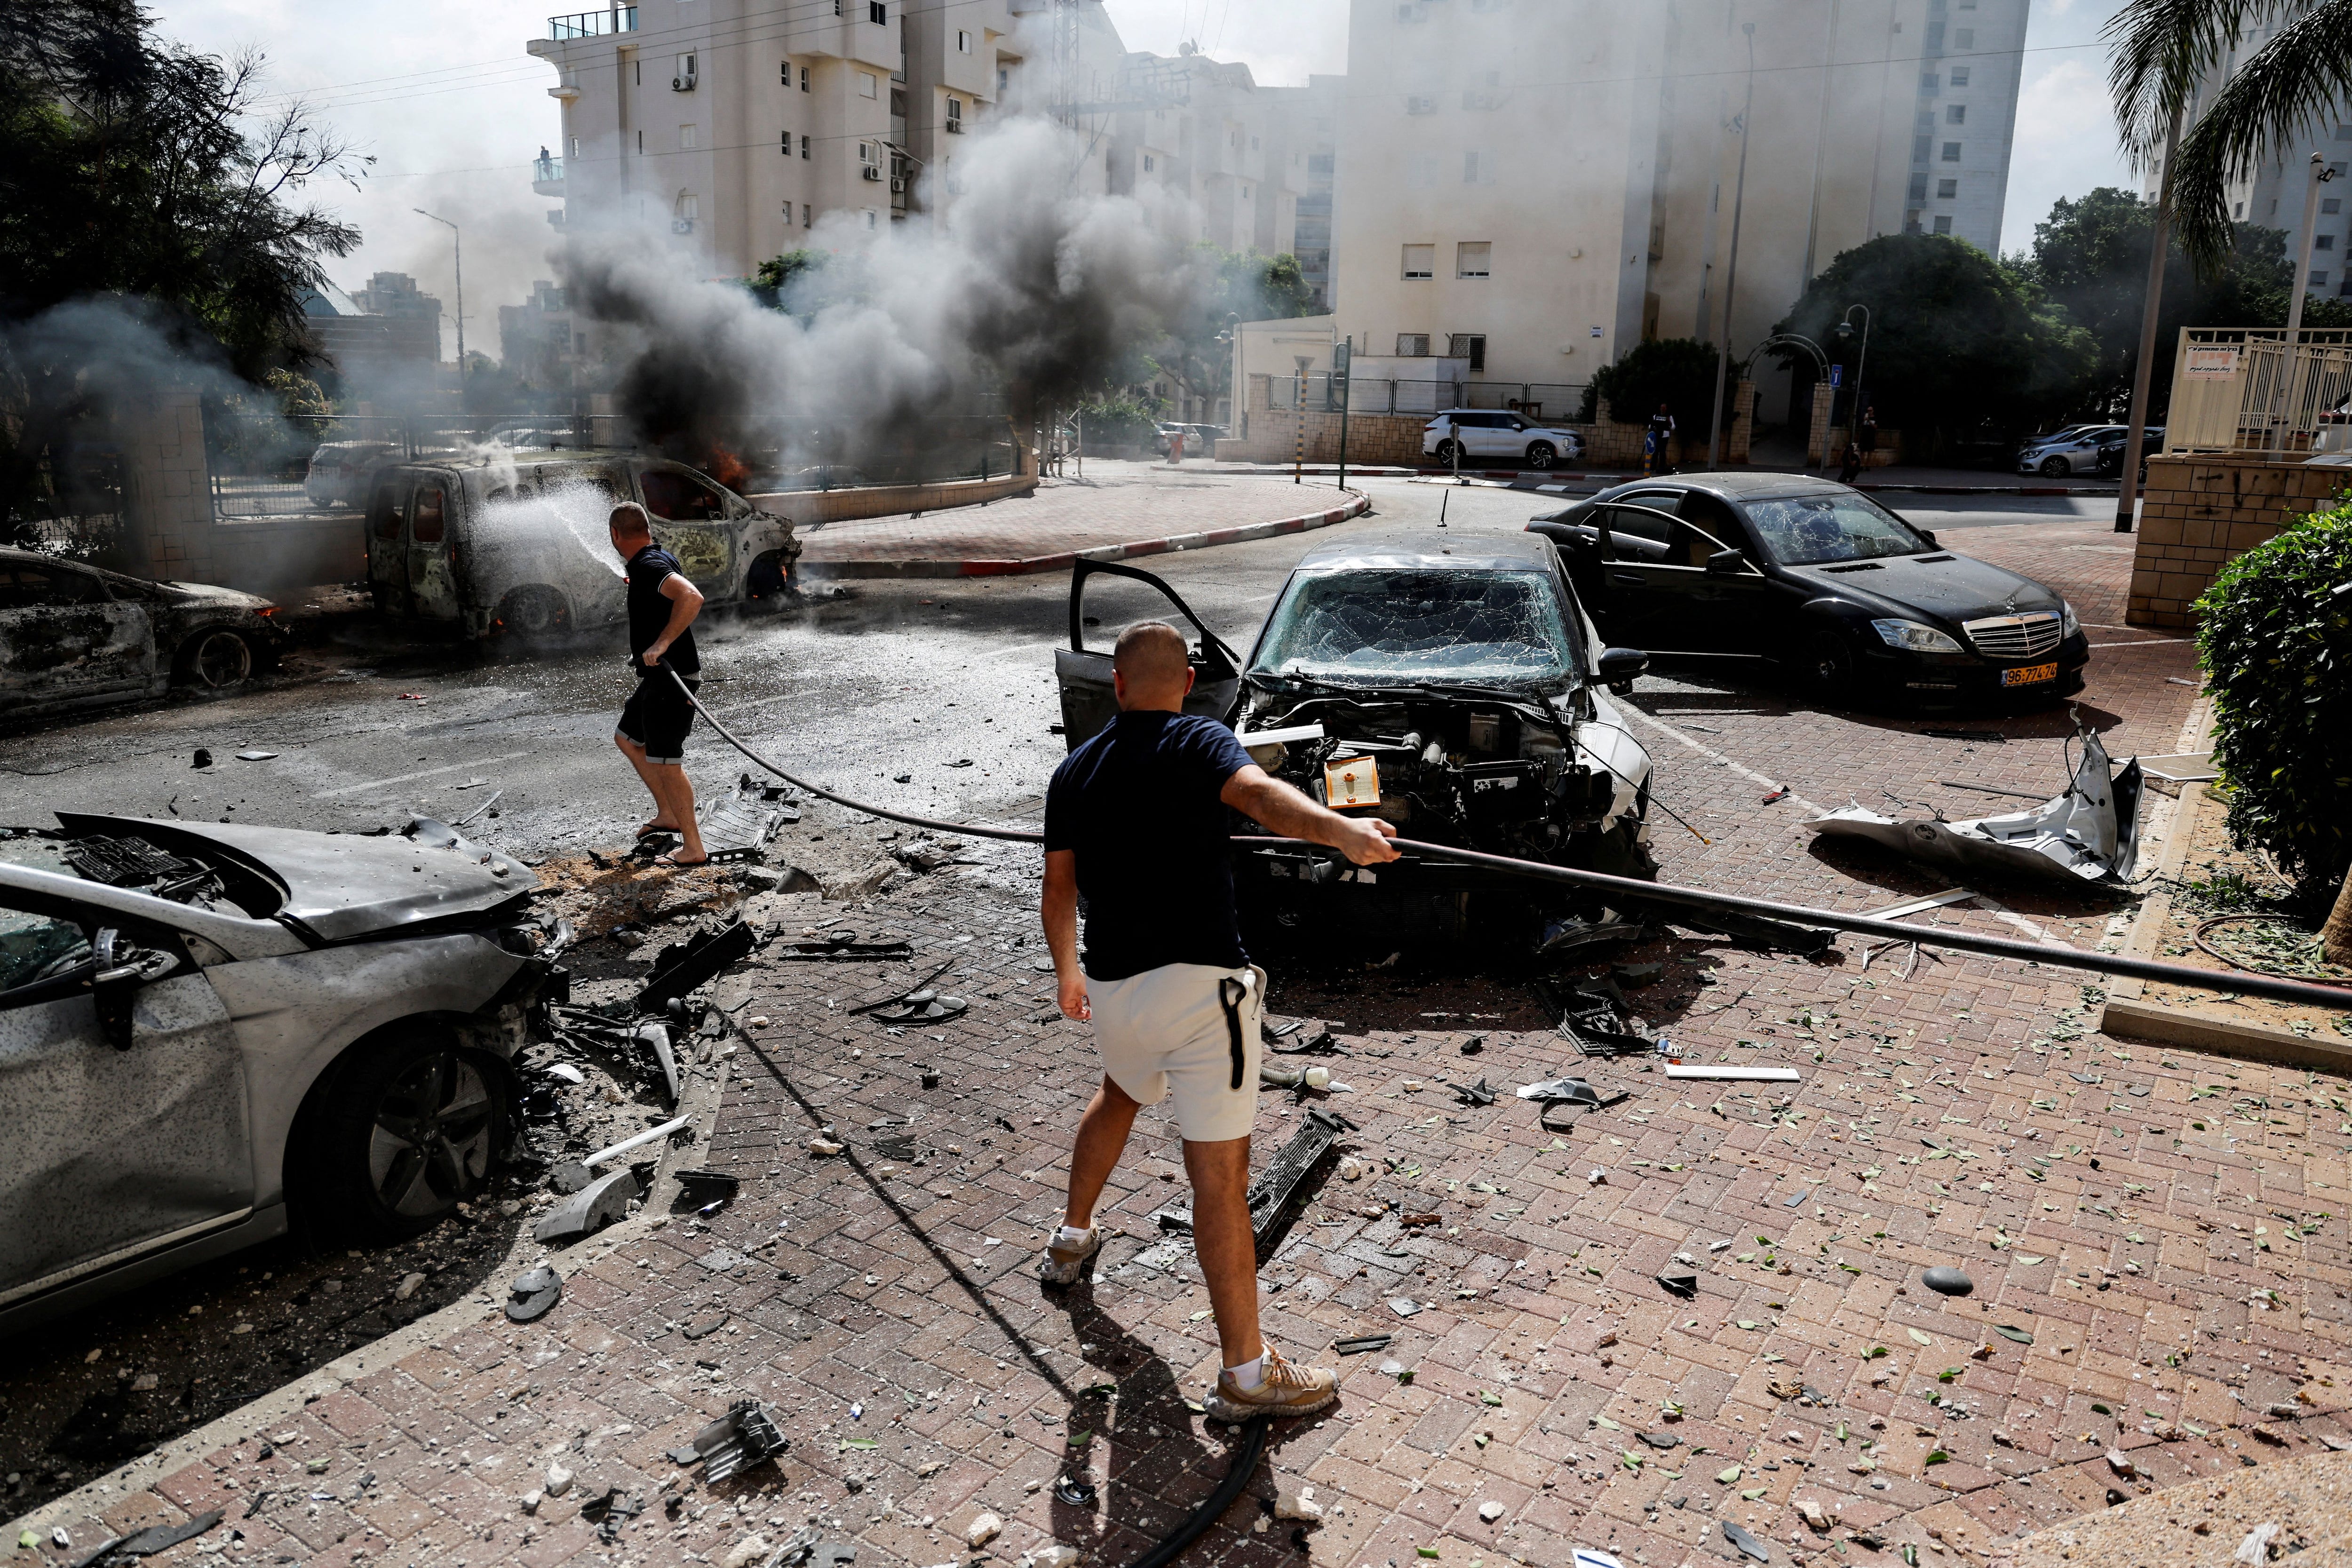 Escombros tras los ataques terroristas en el sur de Israel (Reuters)